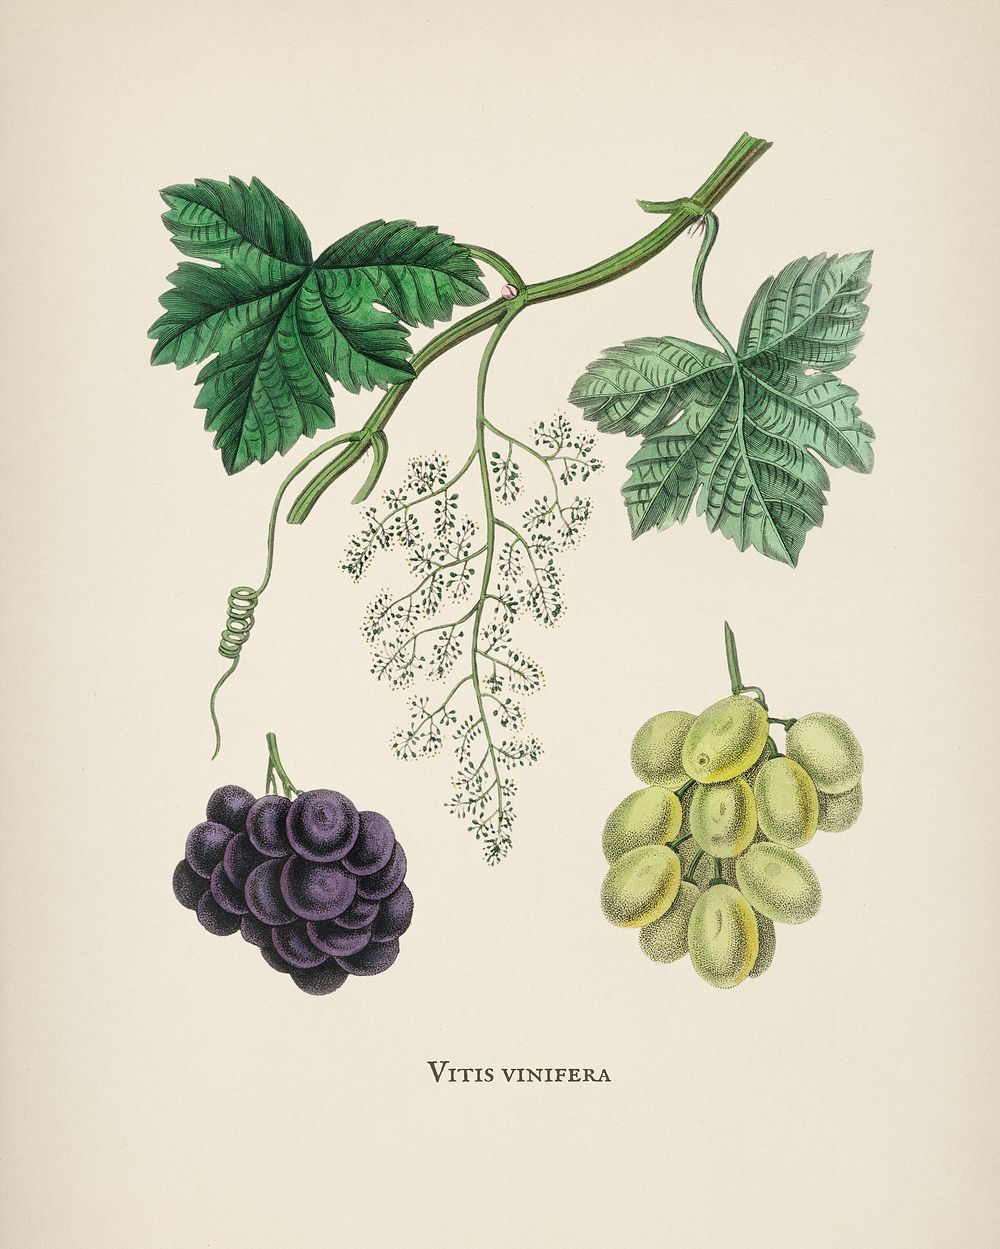 Common grape vine (Vitis vinifera) illustration from Medical Botany (1836) by John Stephenson and James Morss Churchill.